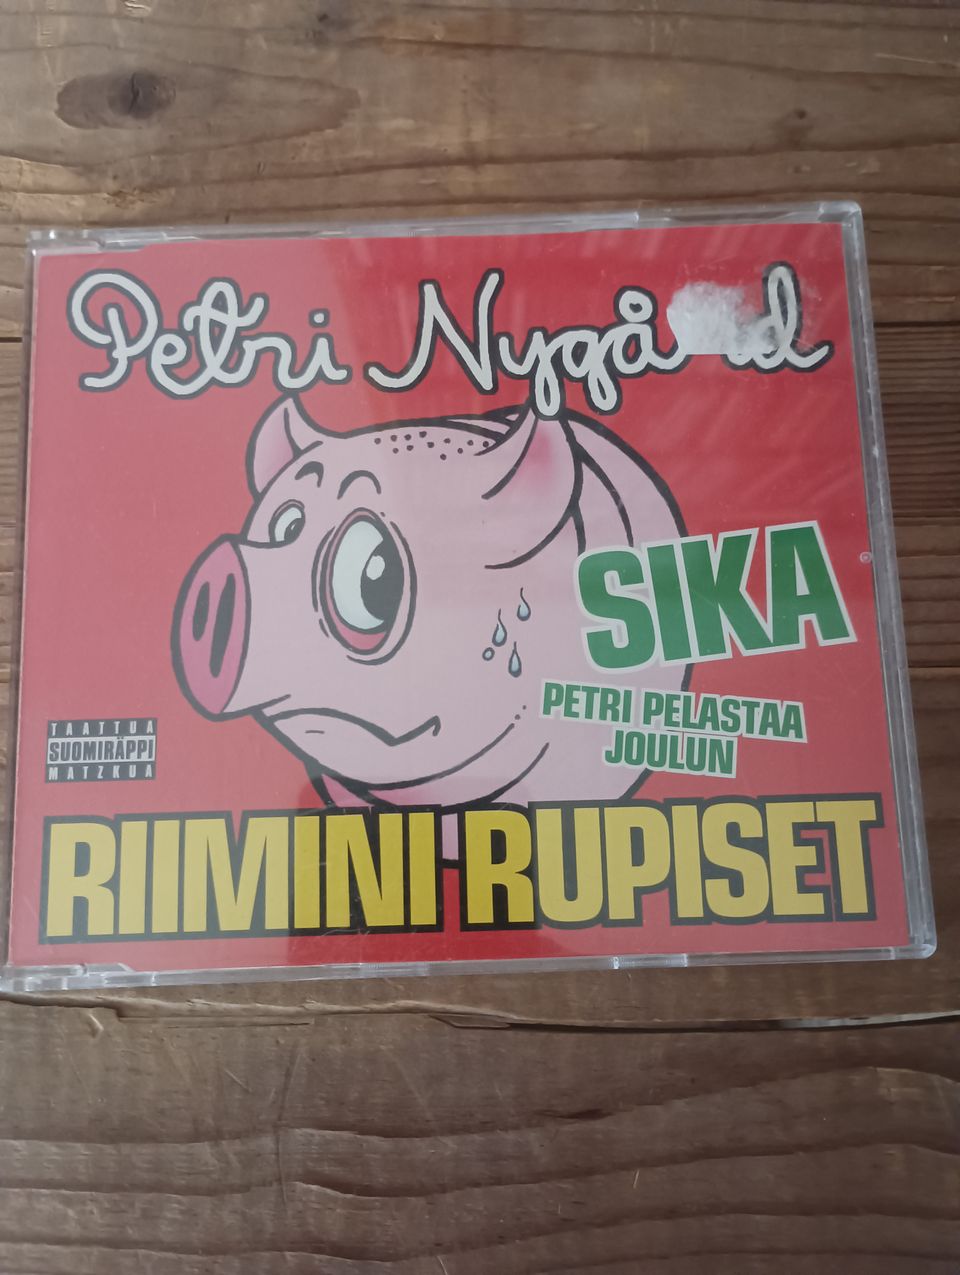 Petri Nygård - Riimini rupiset / Sika / Petri pelastaa joulun CDS